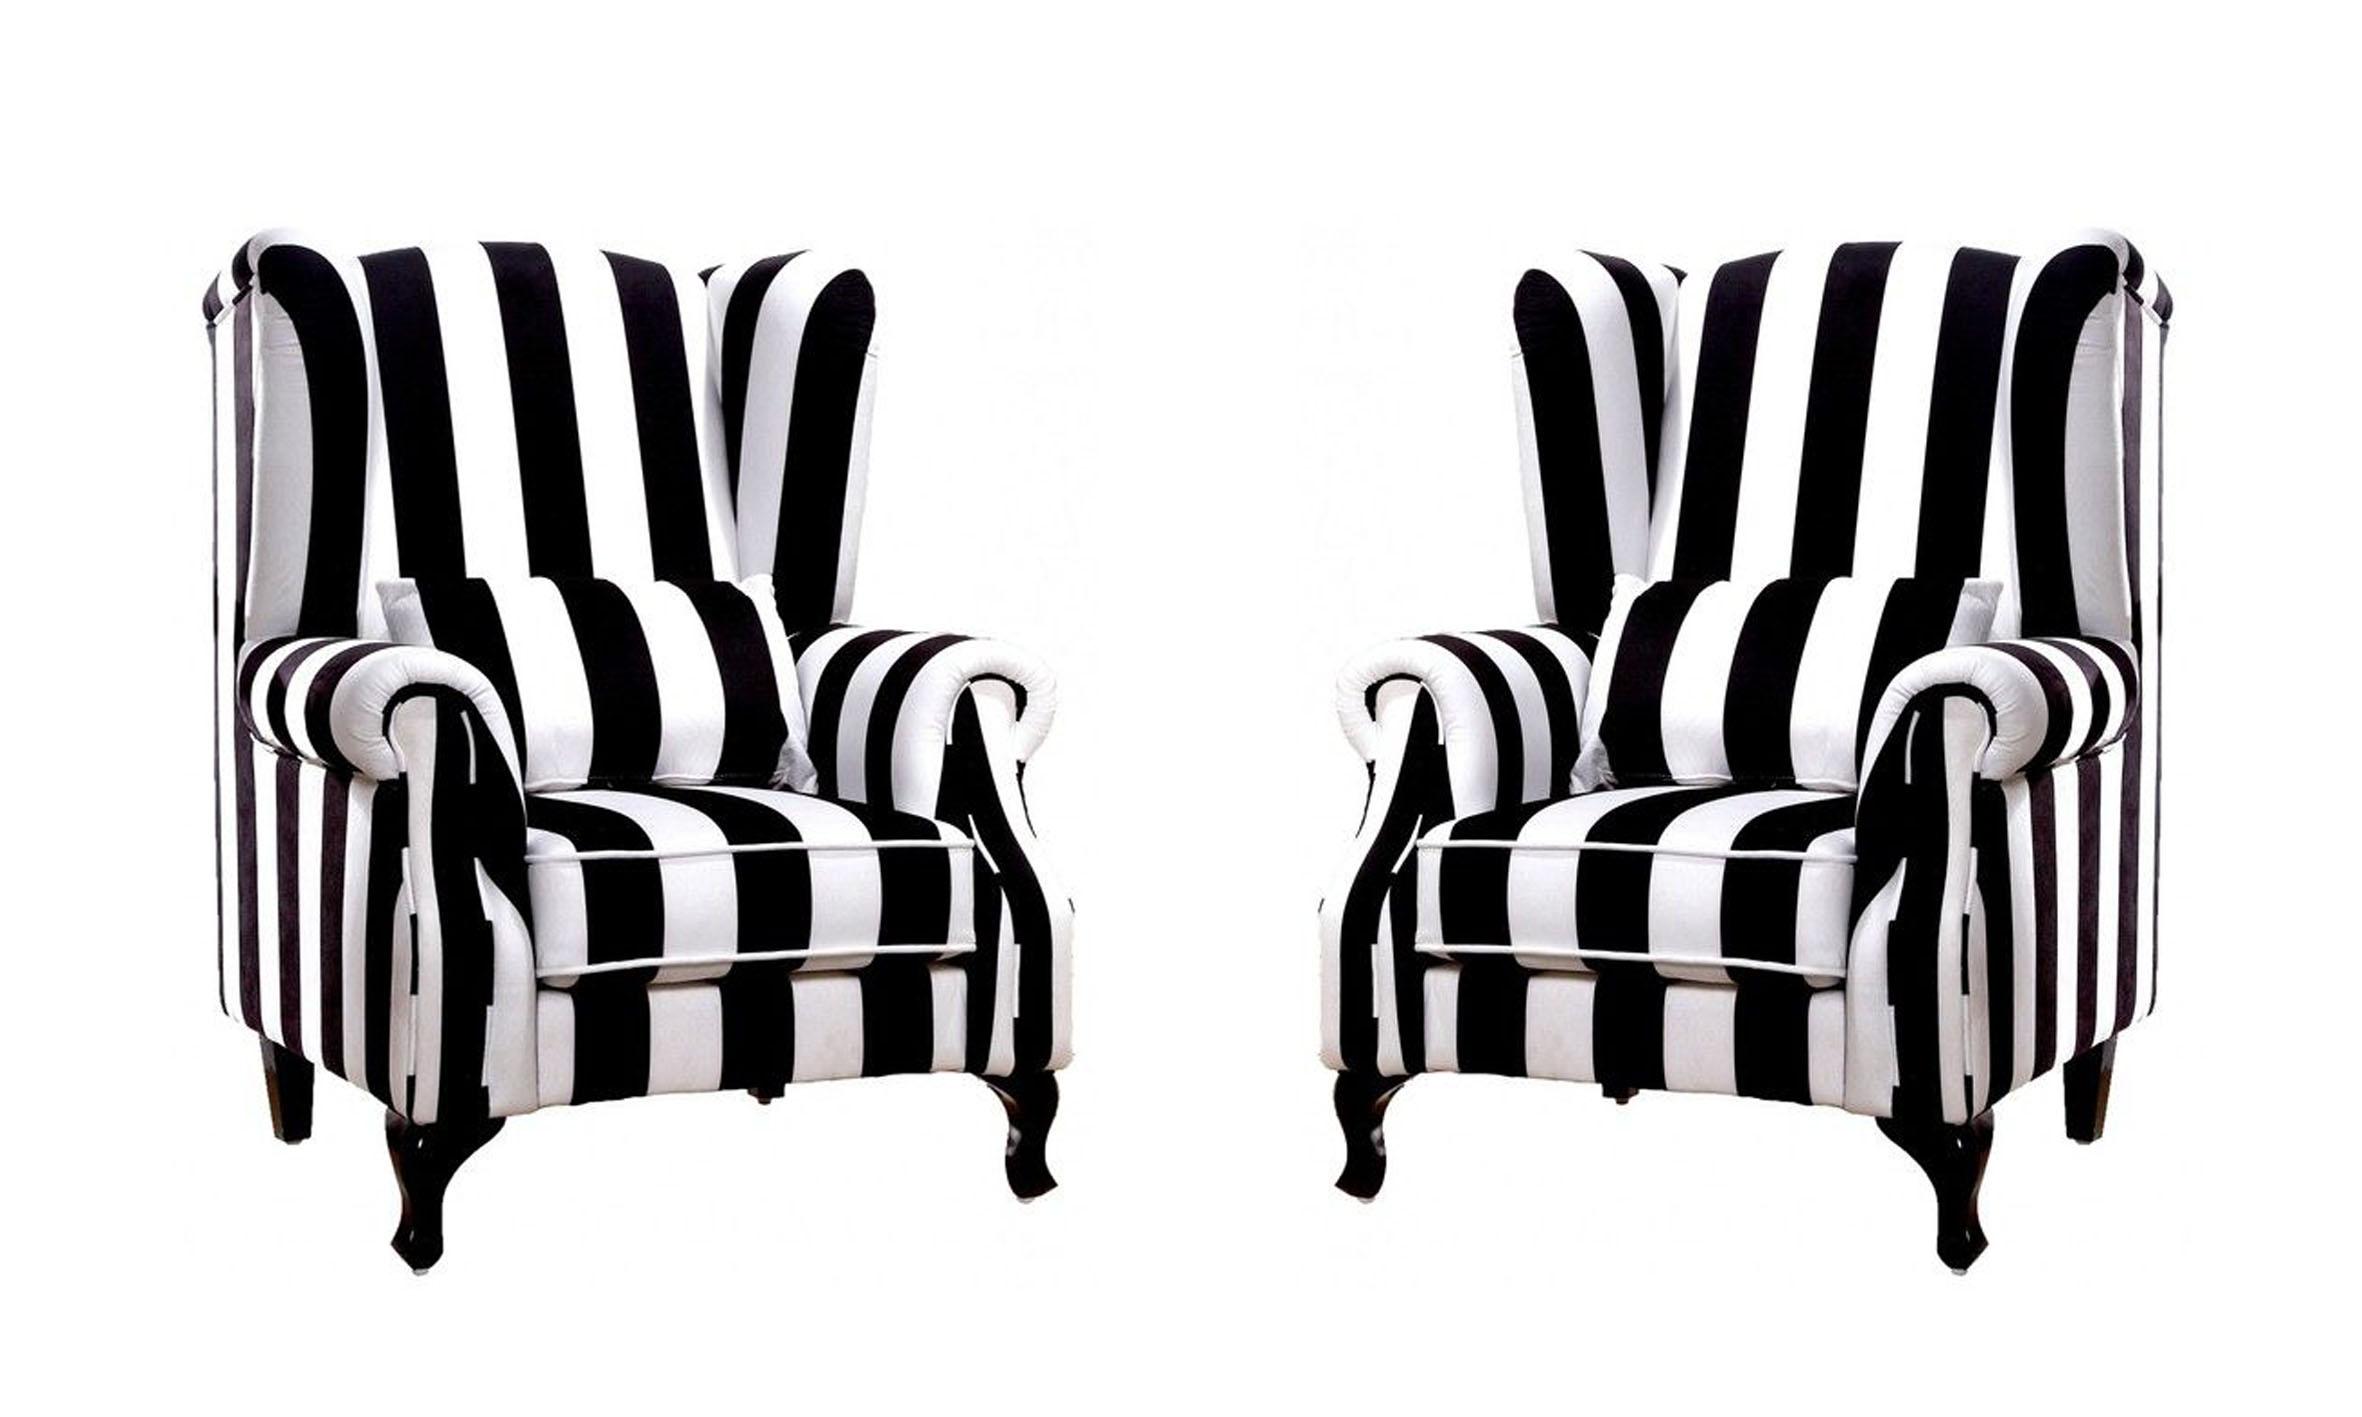 

    
A&B Home 43280 Modern Black & White Stripe Fabric Dark Wood Legs Armchair 2Pcs
